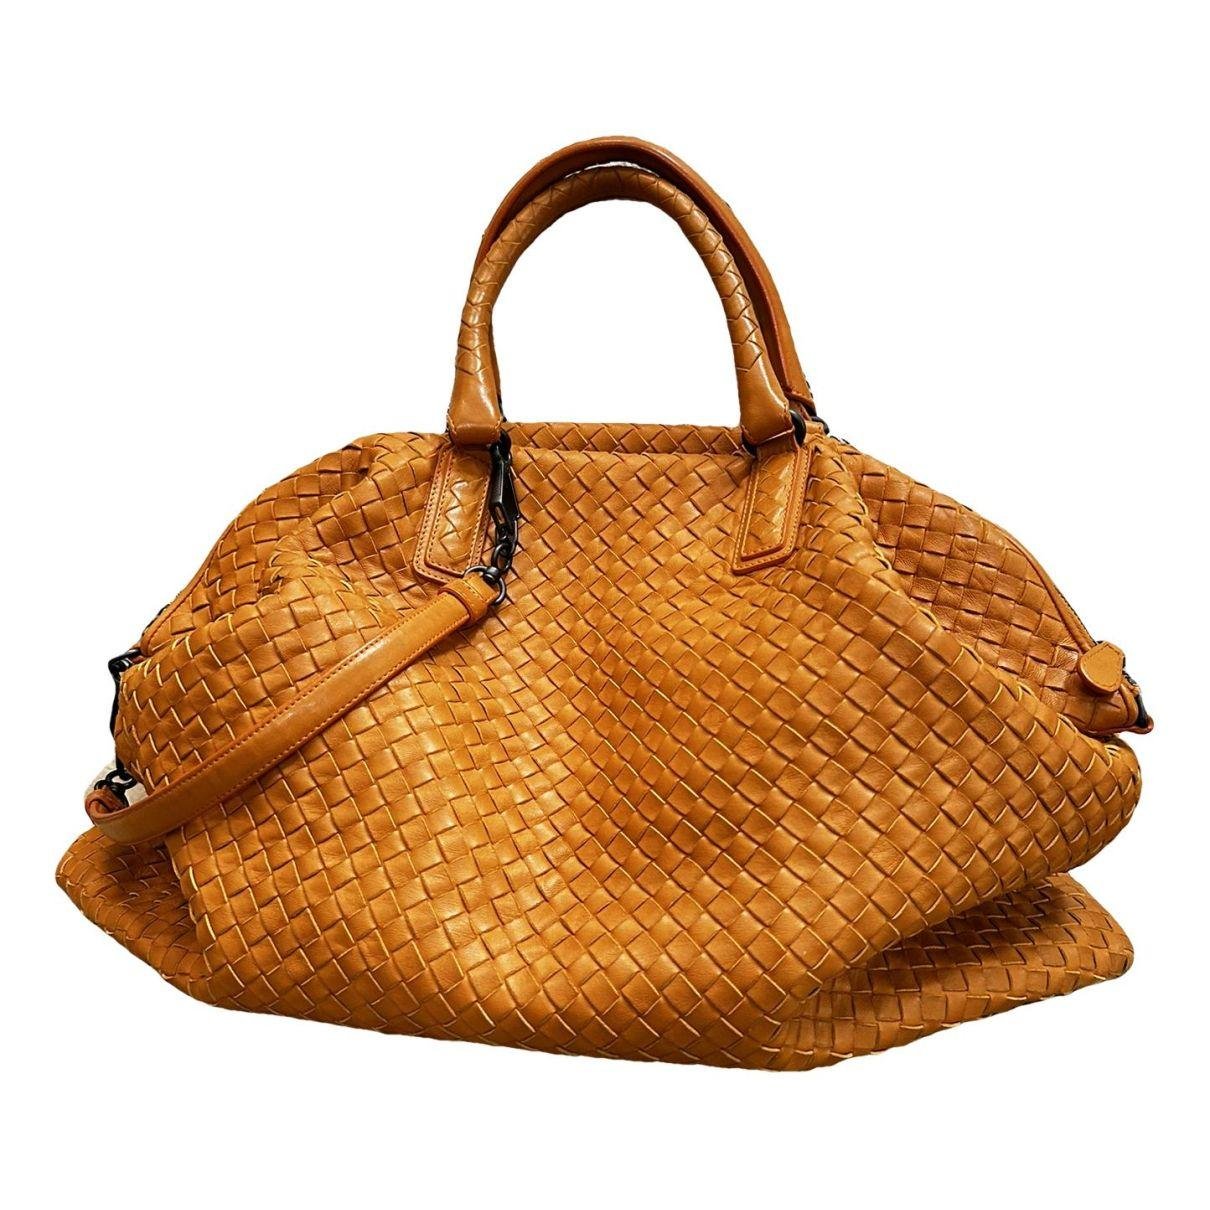 Sloane leather handbag by BOTTEGA VENETA